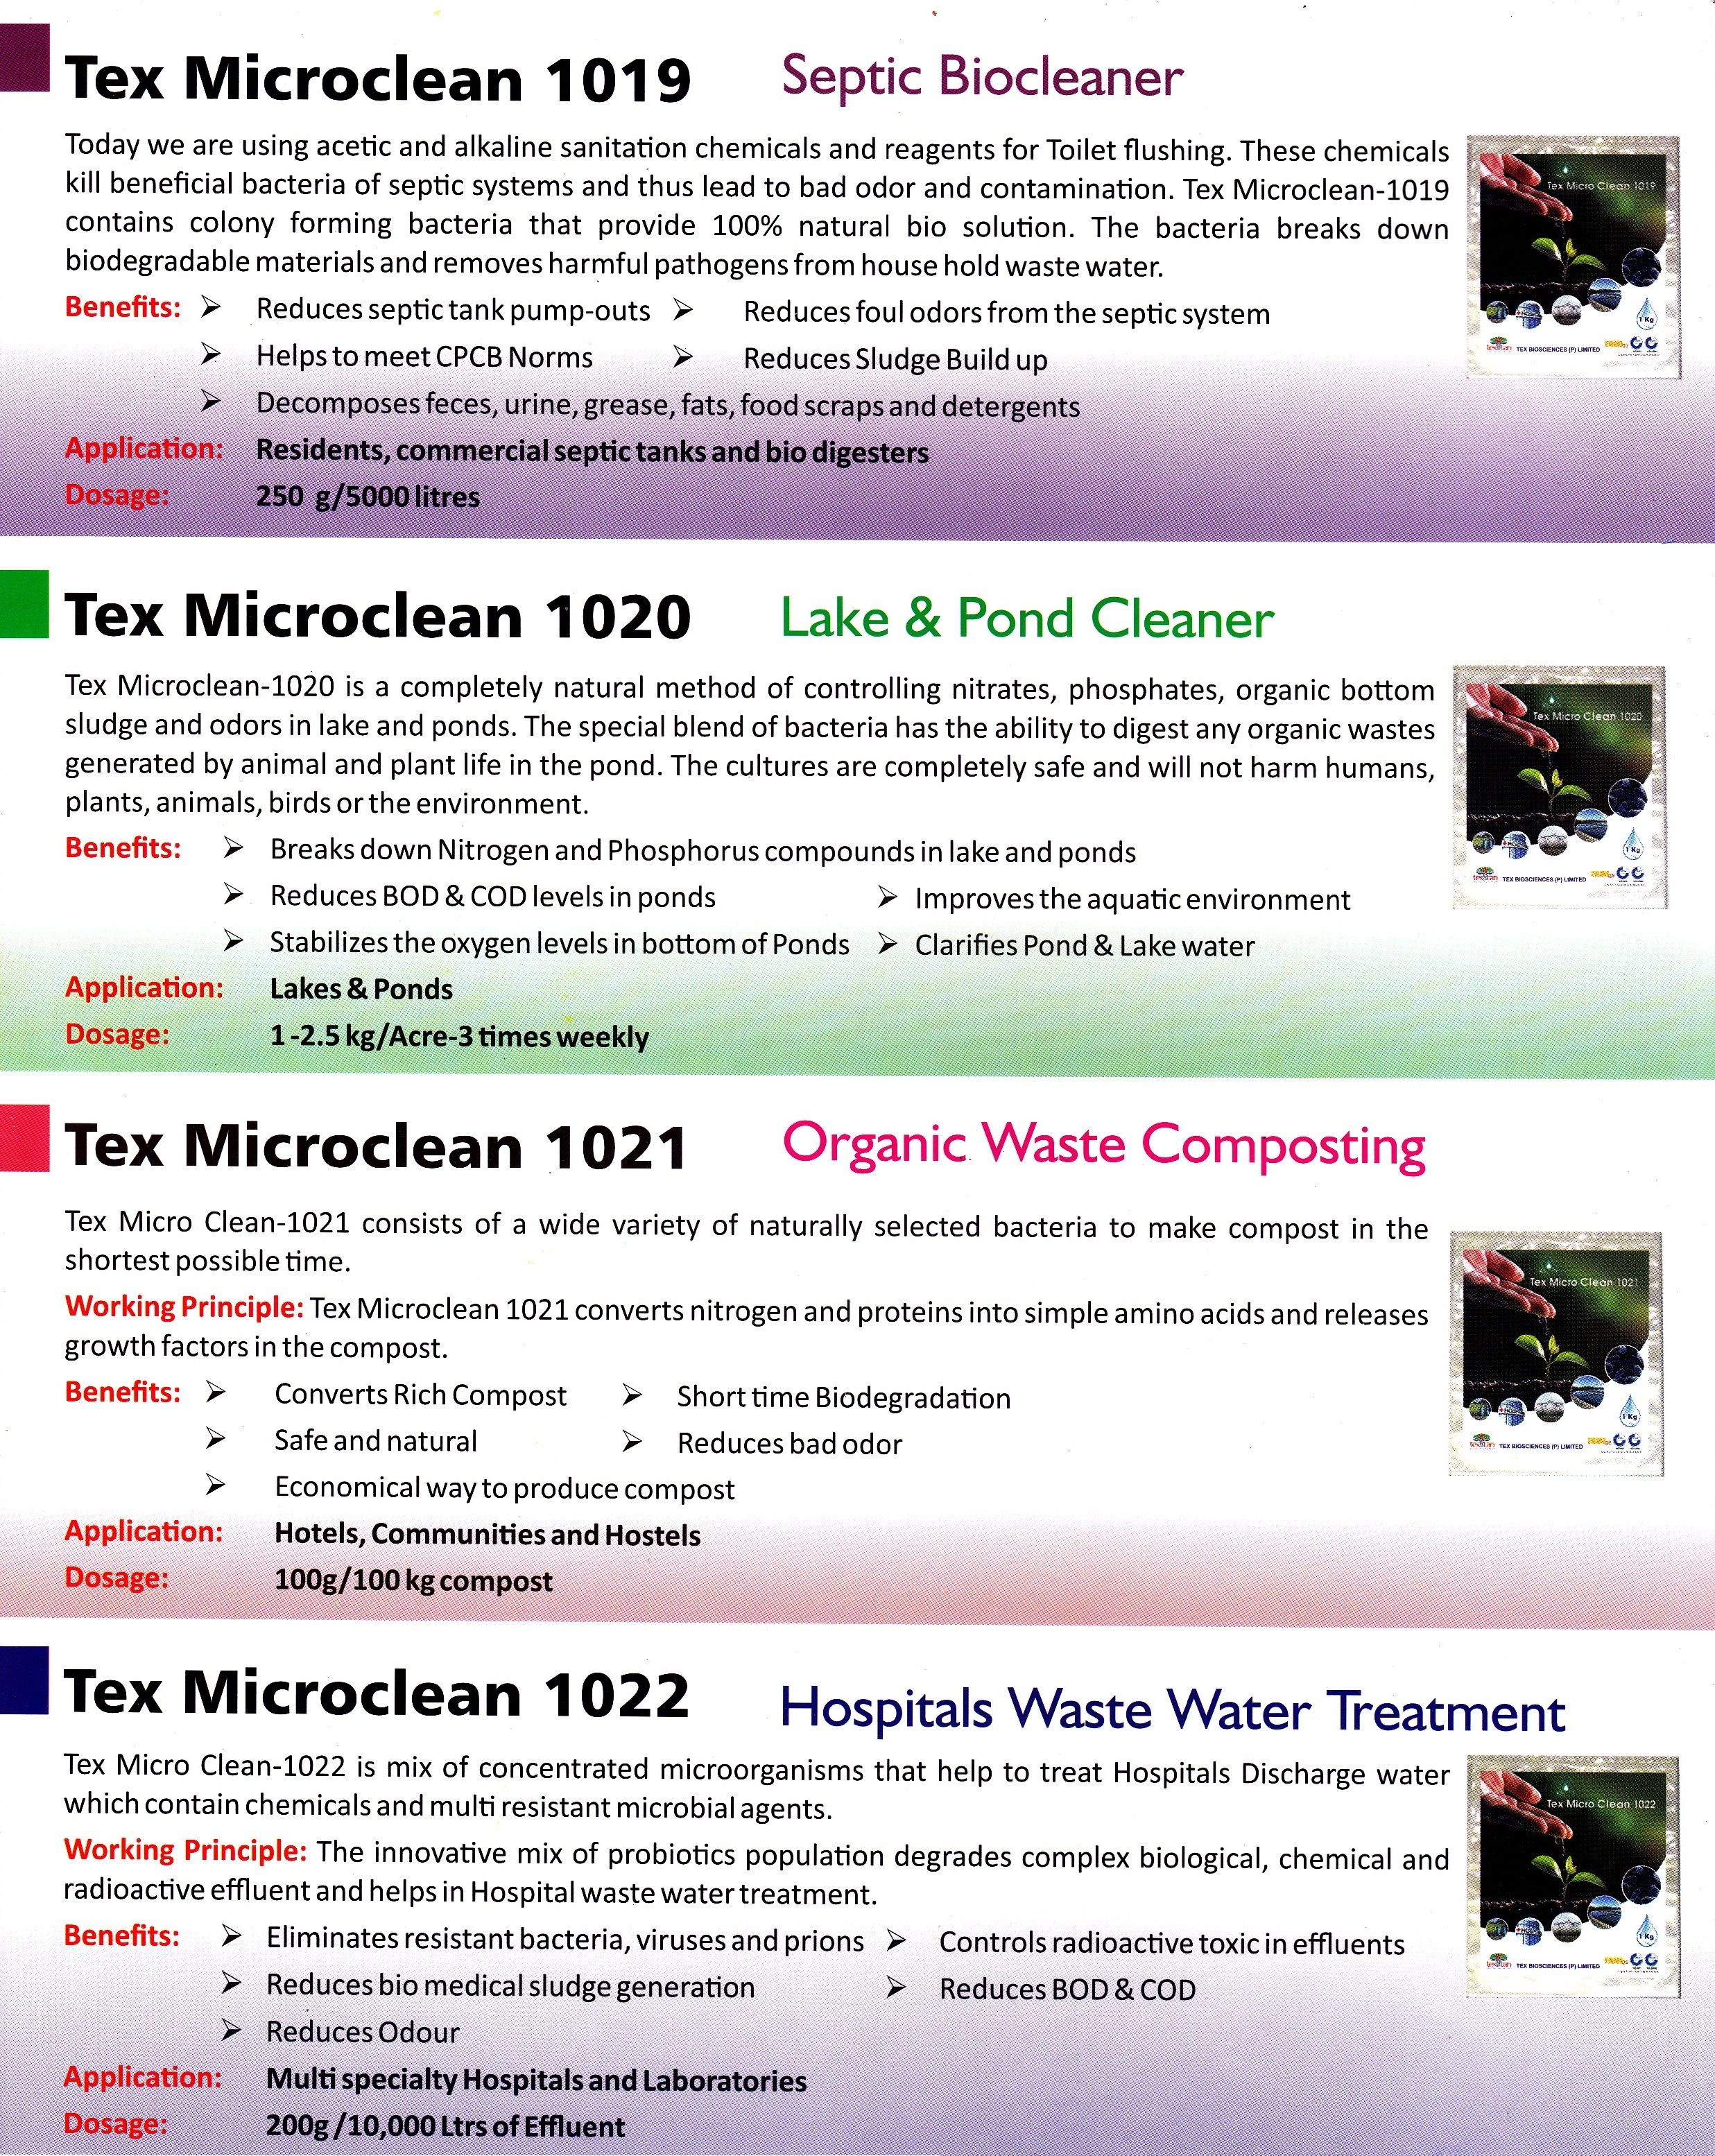 Tex microclean bio culture